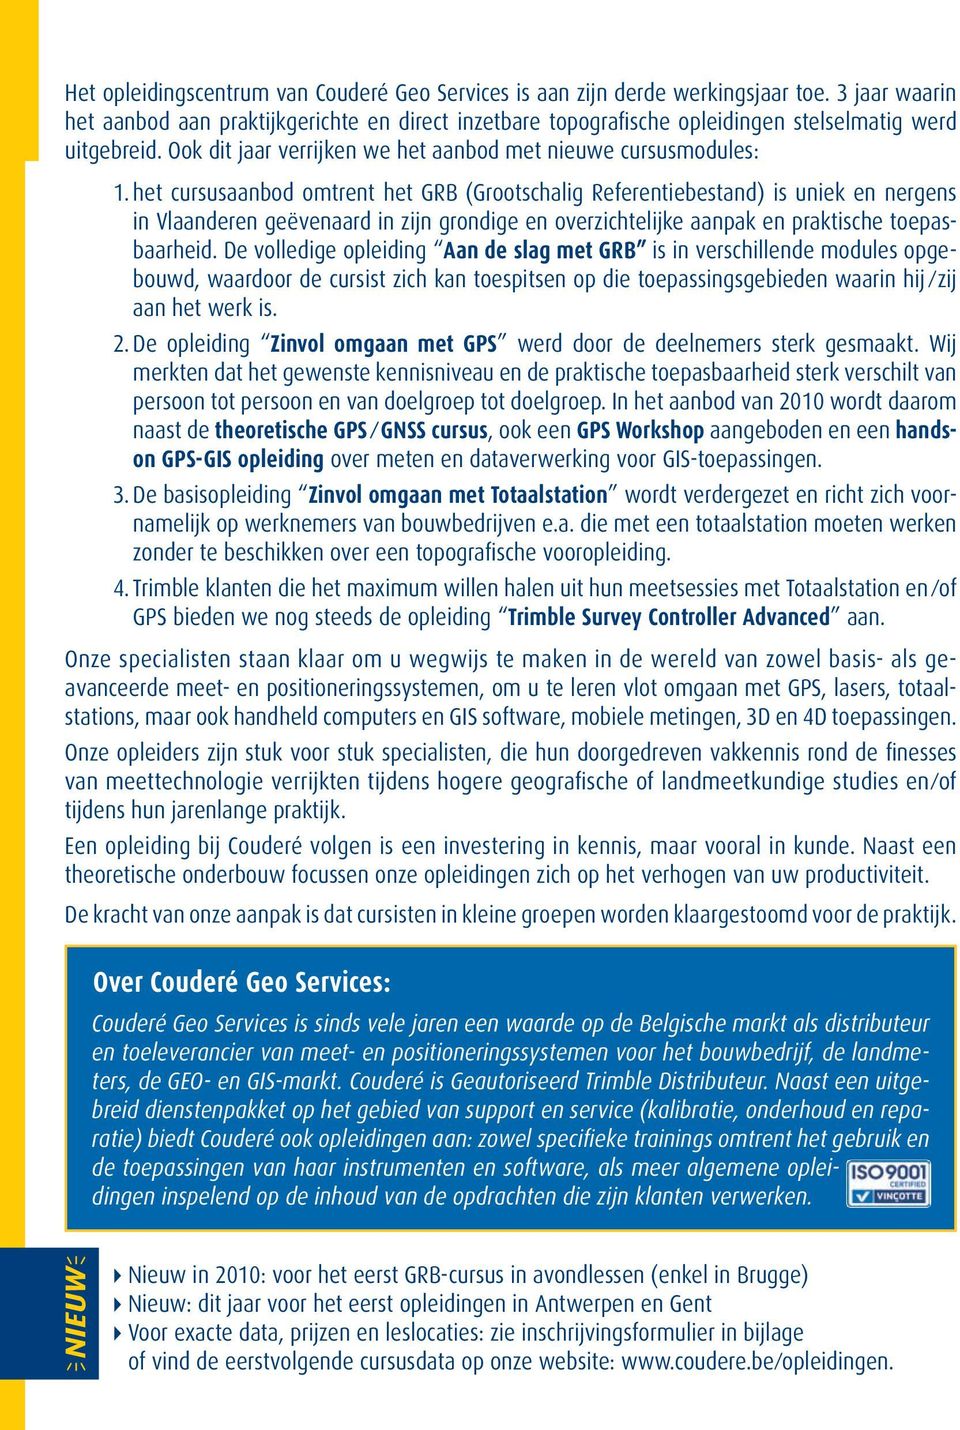 het cursusaanbod omtrent het GRB (Grootschalig Referentiebestand) is uniek en nergens in Vlaanderen geëvenaard in zijn grondige en overzichtelijke aanpak en praktische toepasbaarheid.